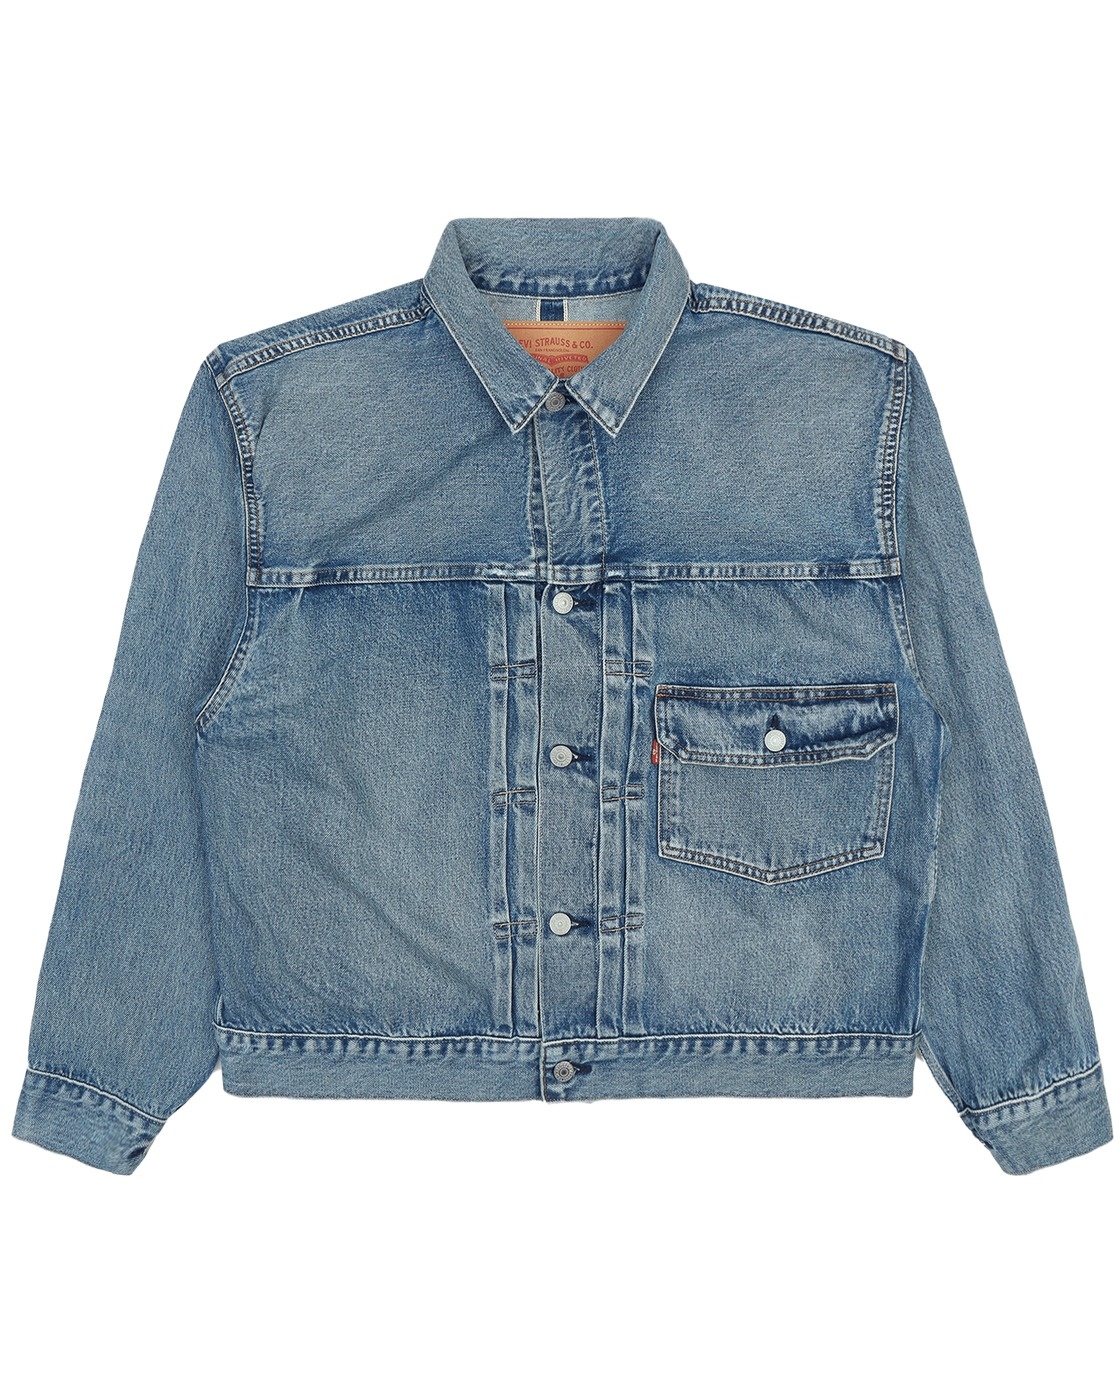 Levi's Vintage Clothing Beams Super Wide Denim Jacket Vintage